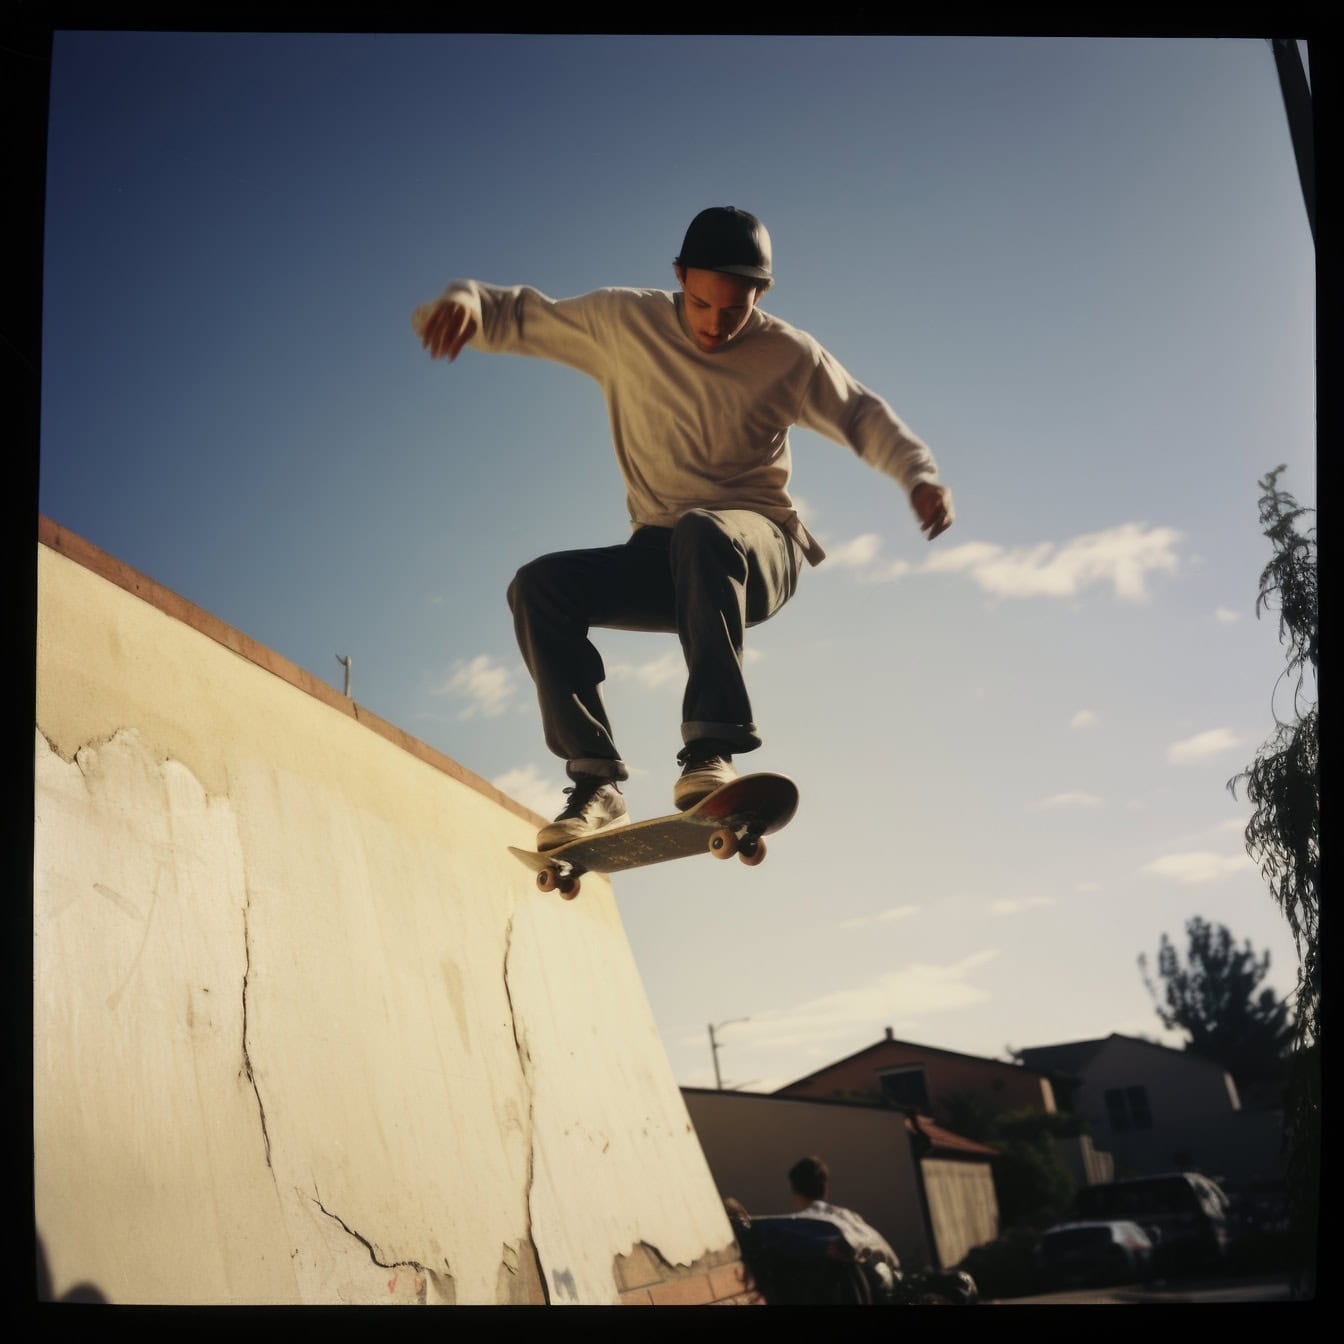 Gammelt polaroidfoto af en ung mand, der hopper fra en rampe på et skateboard som en stuntman